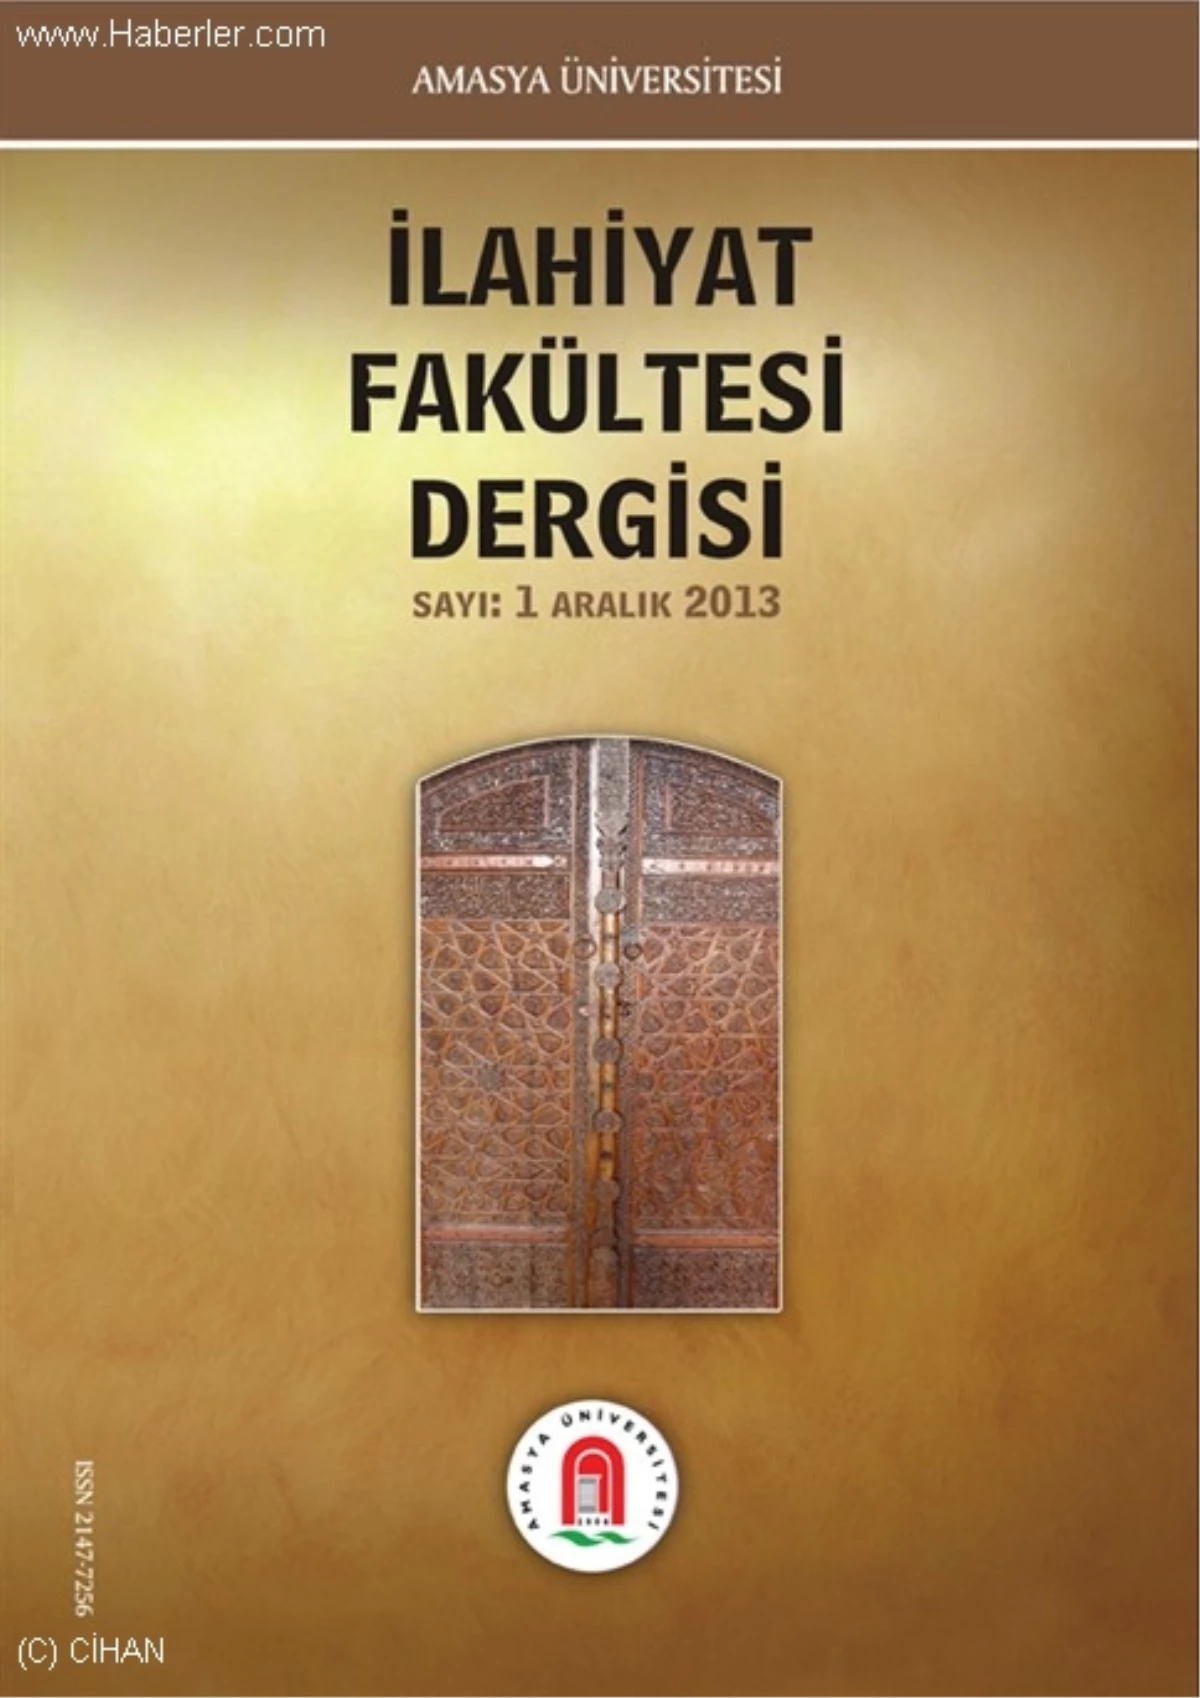 Amasya Üniversitesi İlahiyat Fakültesi Dergi Çıkardı